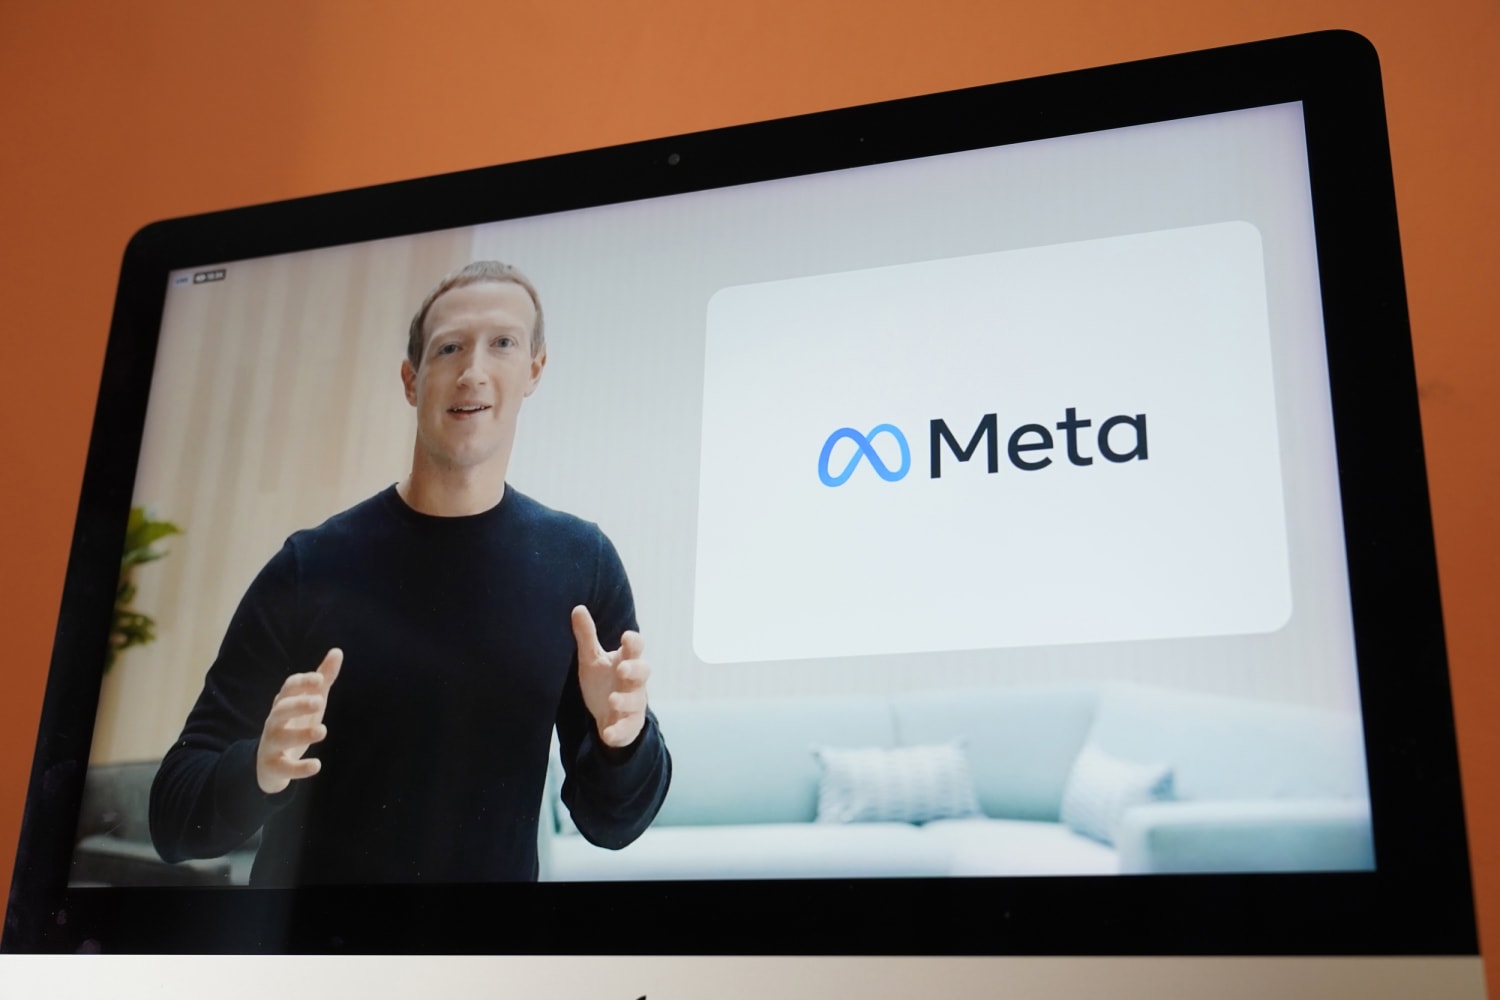 zuckerberg tells staff to meta stock